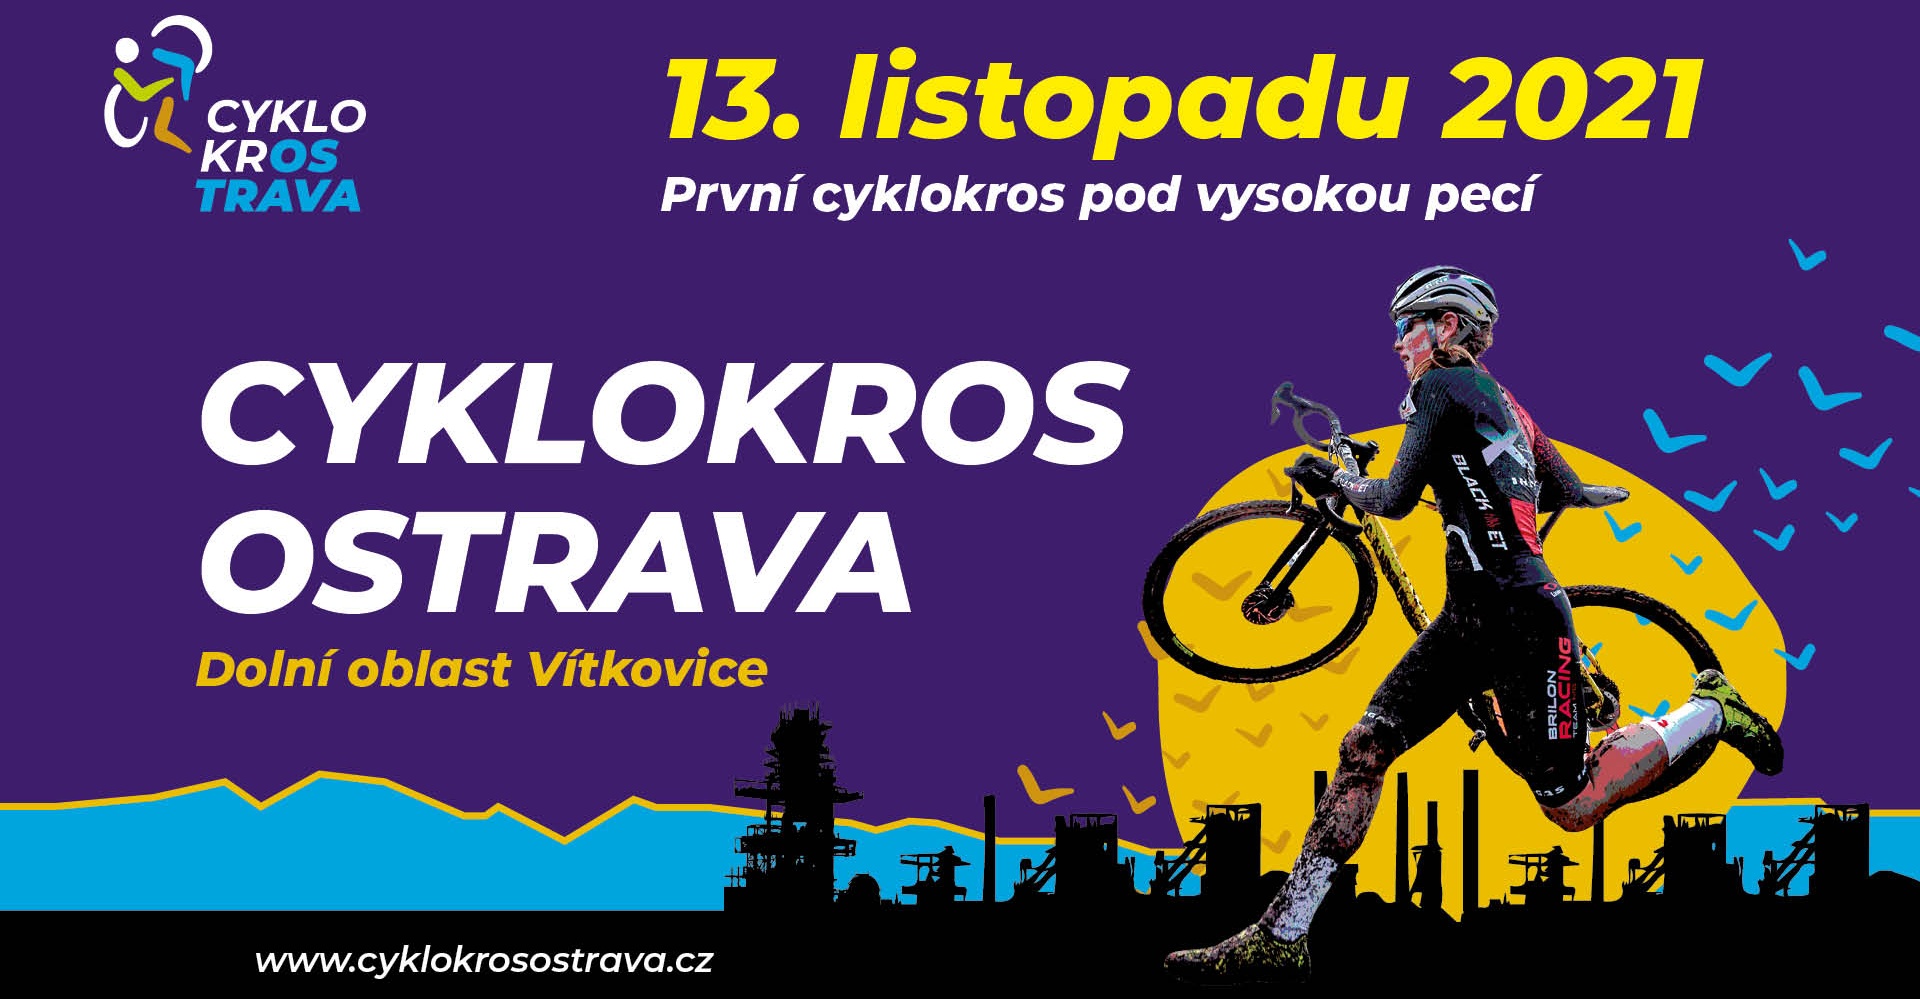 Cyklokros Ostrava 